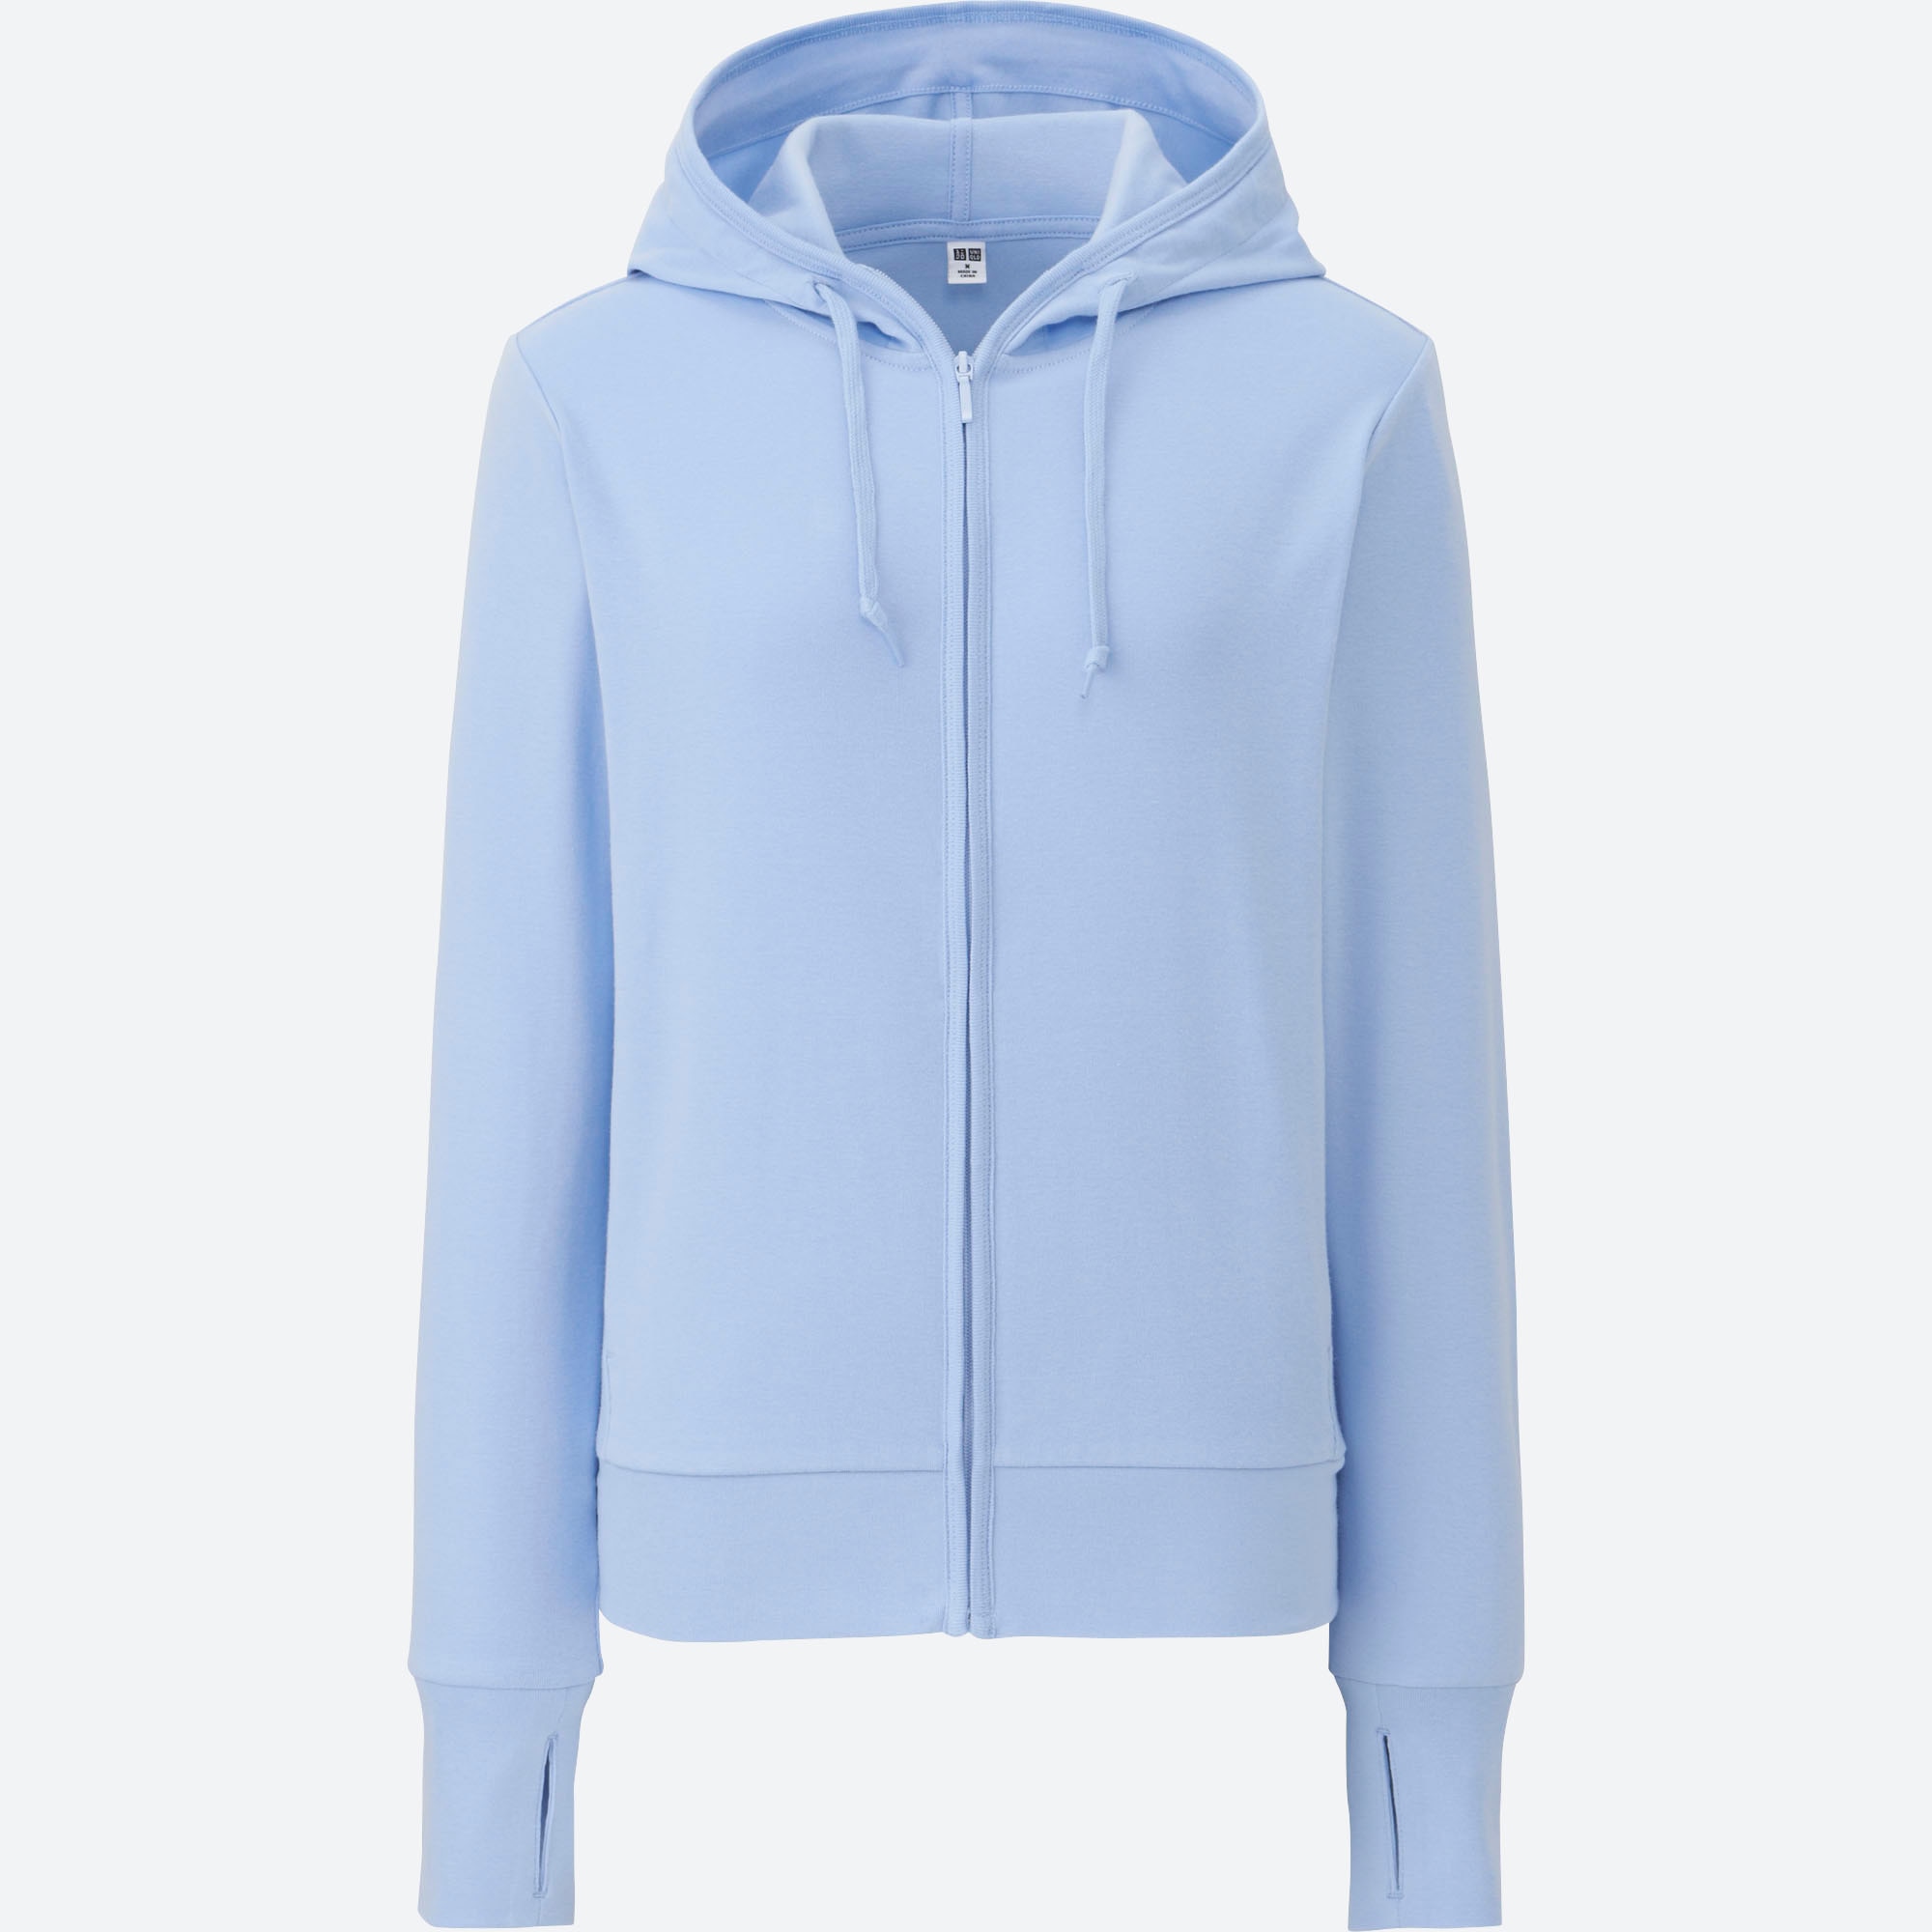 blue zip up hoodie womens